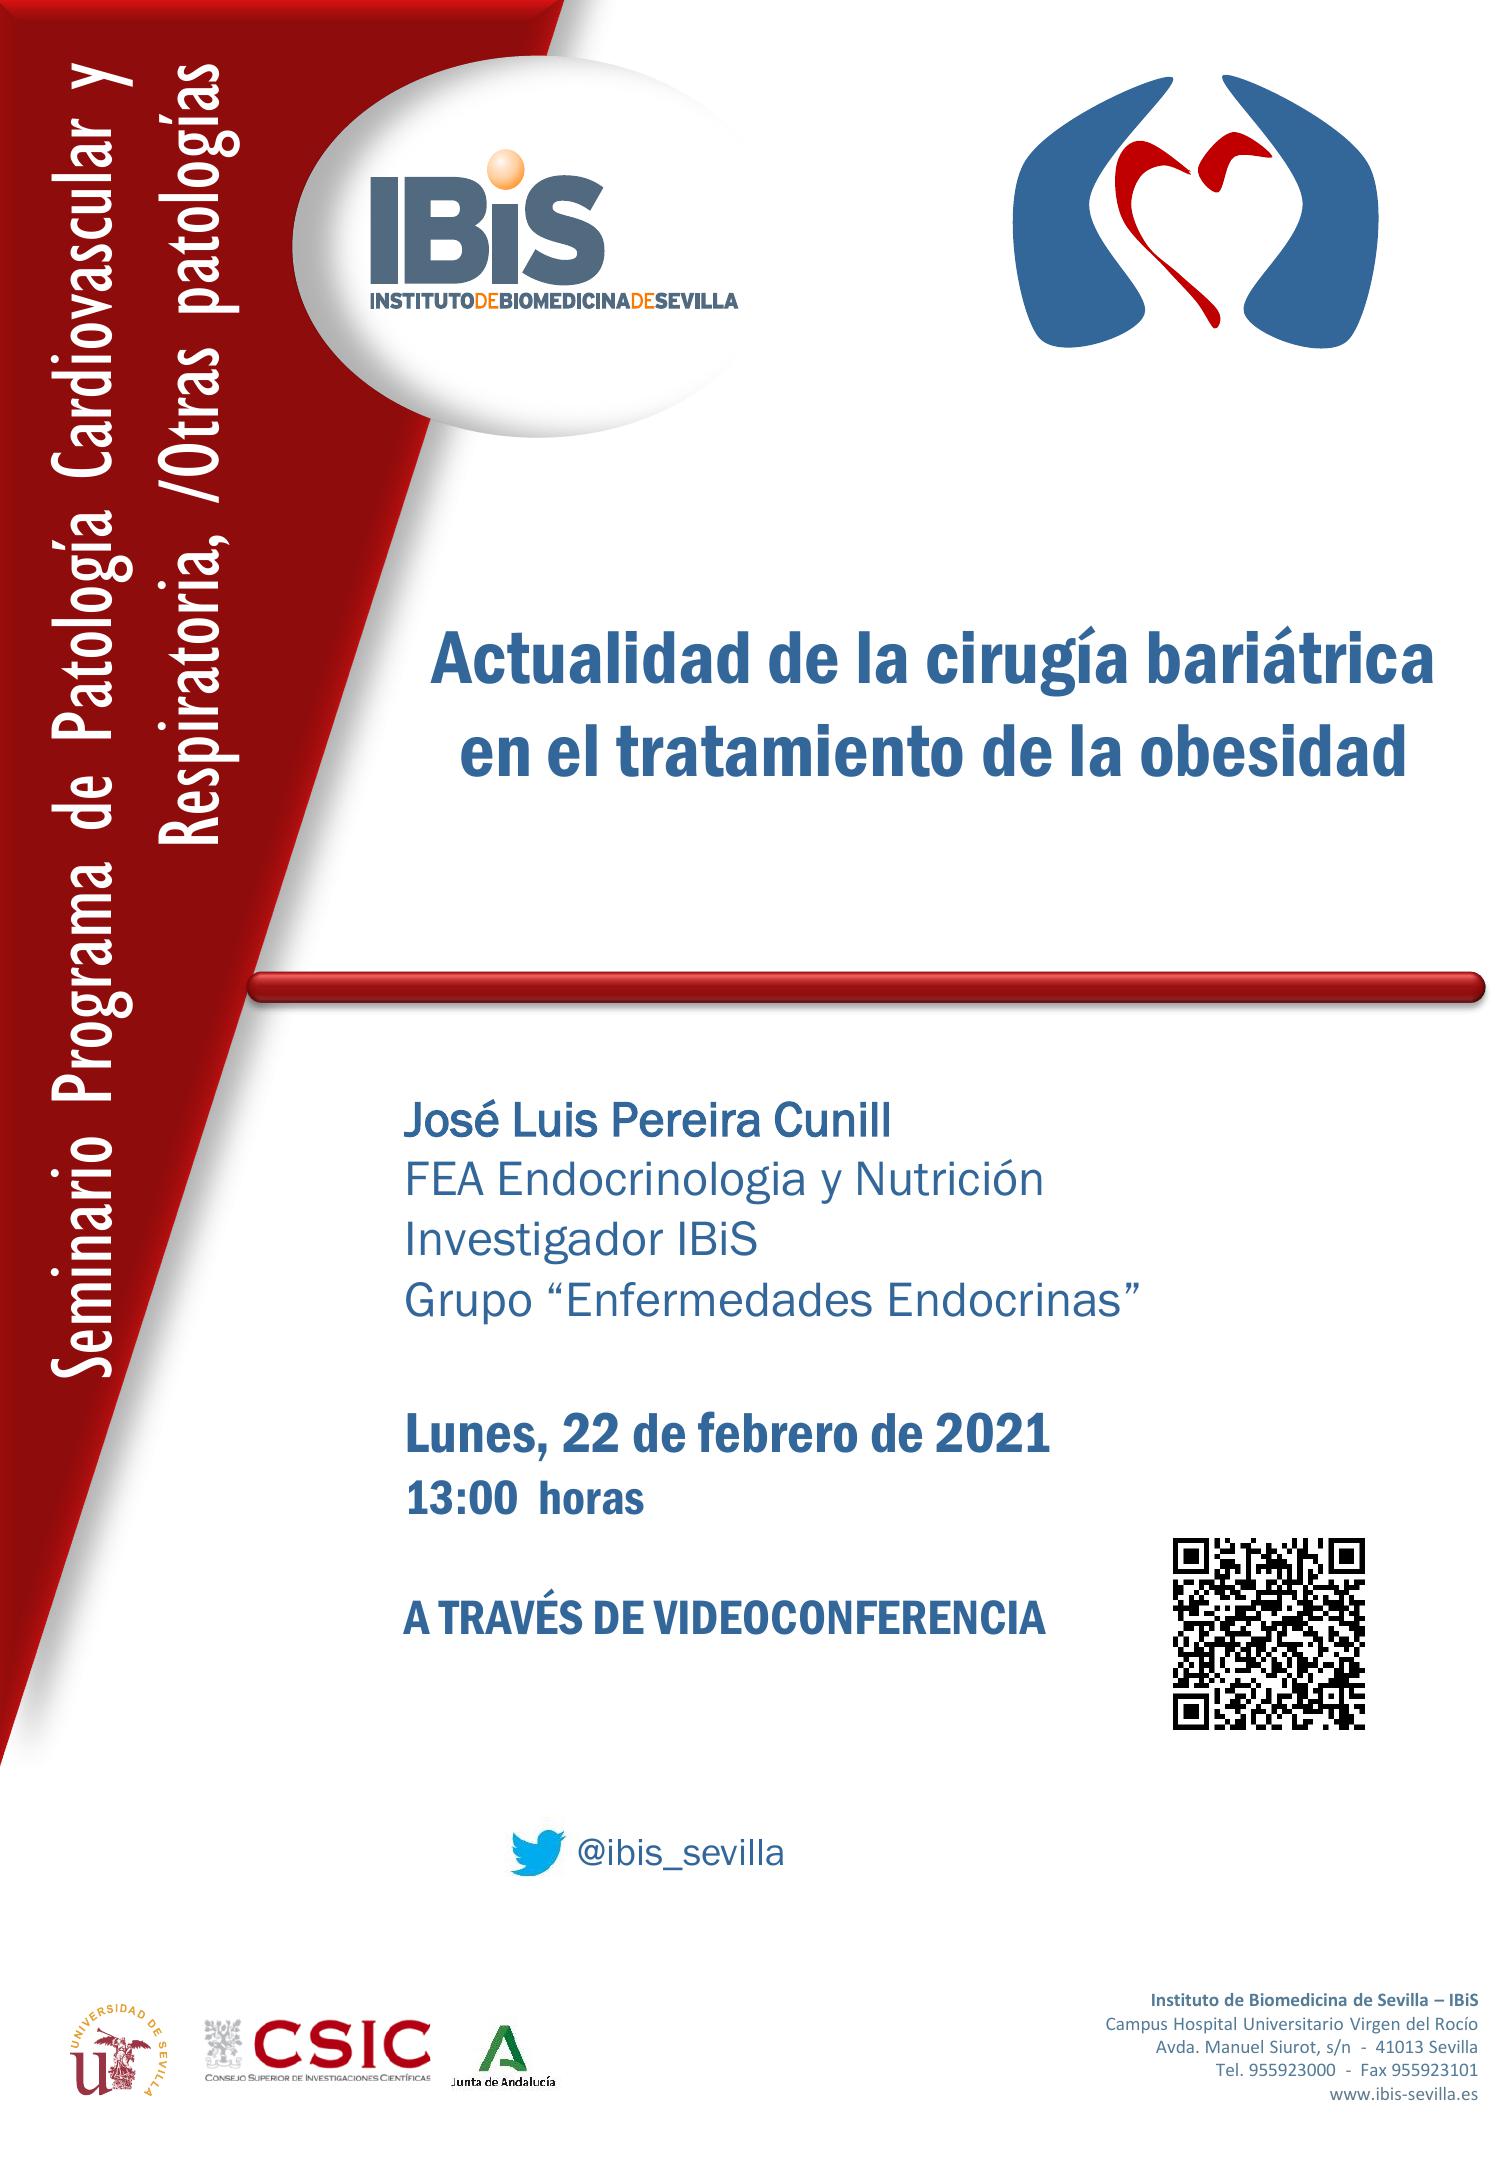 Poster: Actualidad de la cirugía bariátrica en el tratamiento de la obesidad